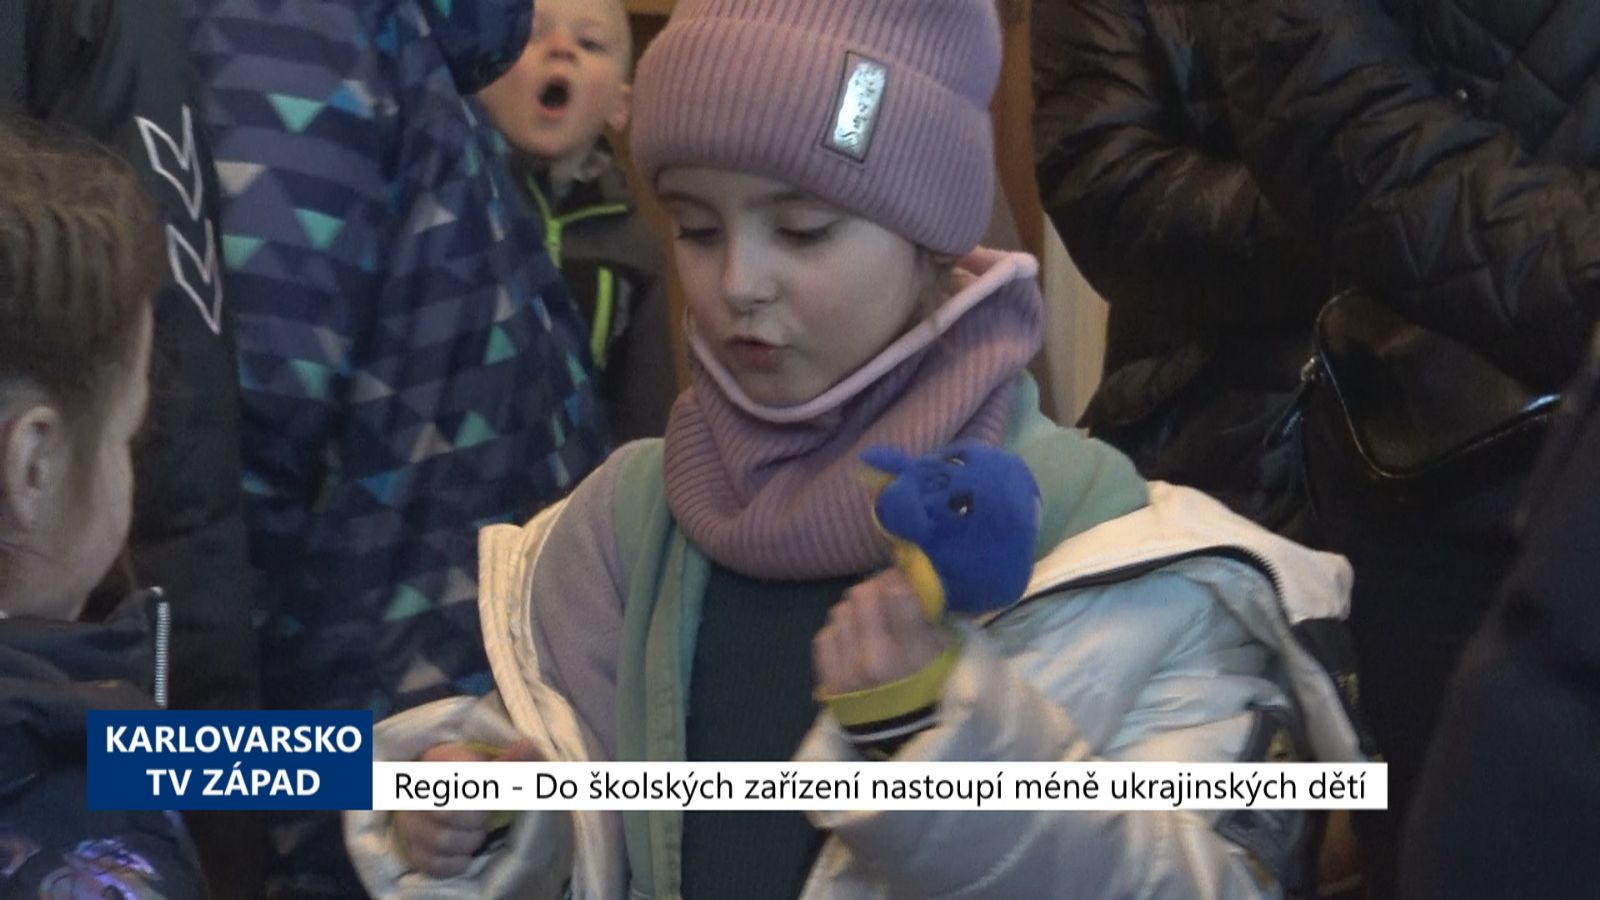 Region: Do školských zařízení nastoupí méně ukrajinských dětí (TV Západ)